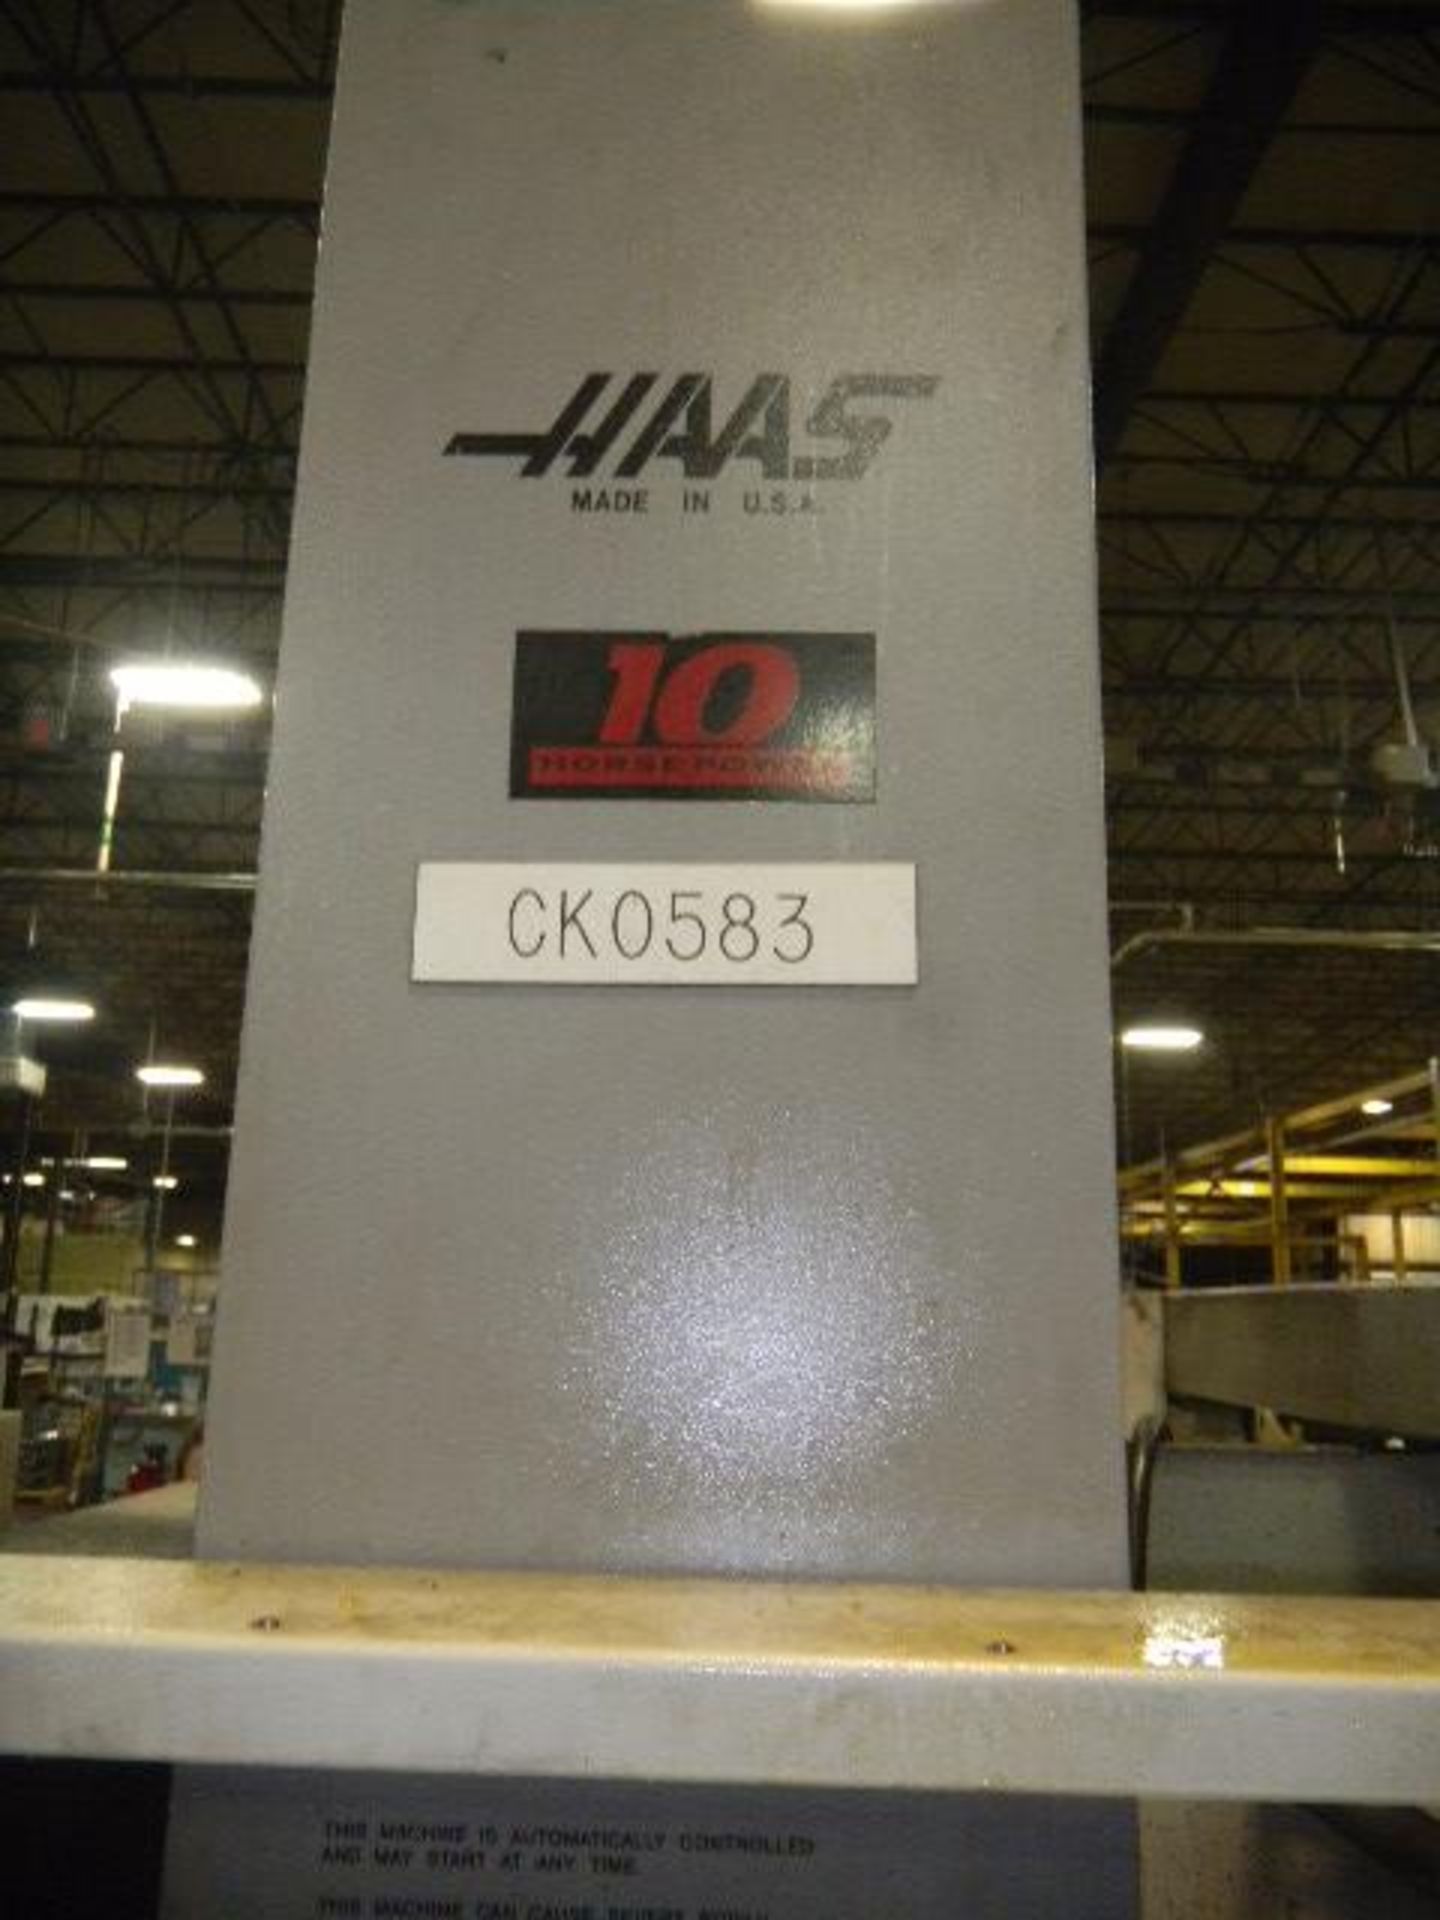 Haas Vertical Mill - (10) Hp - Asset I.D. 9400446 CK 0583